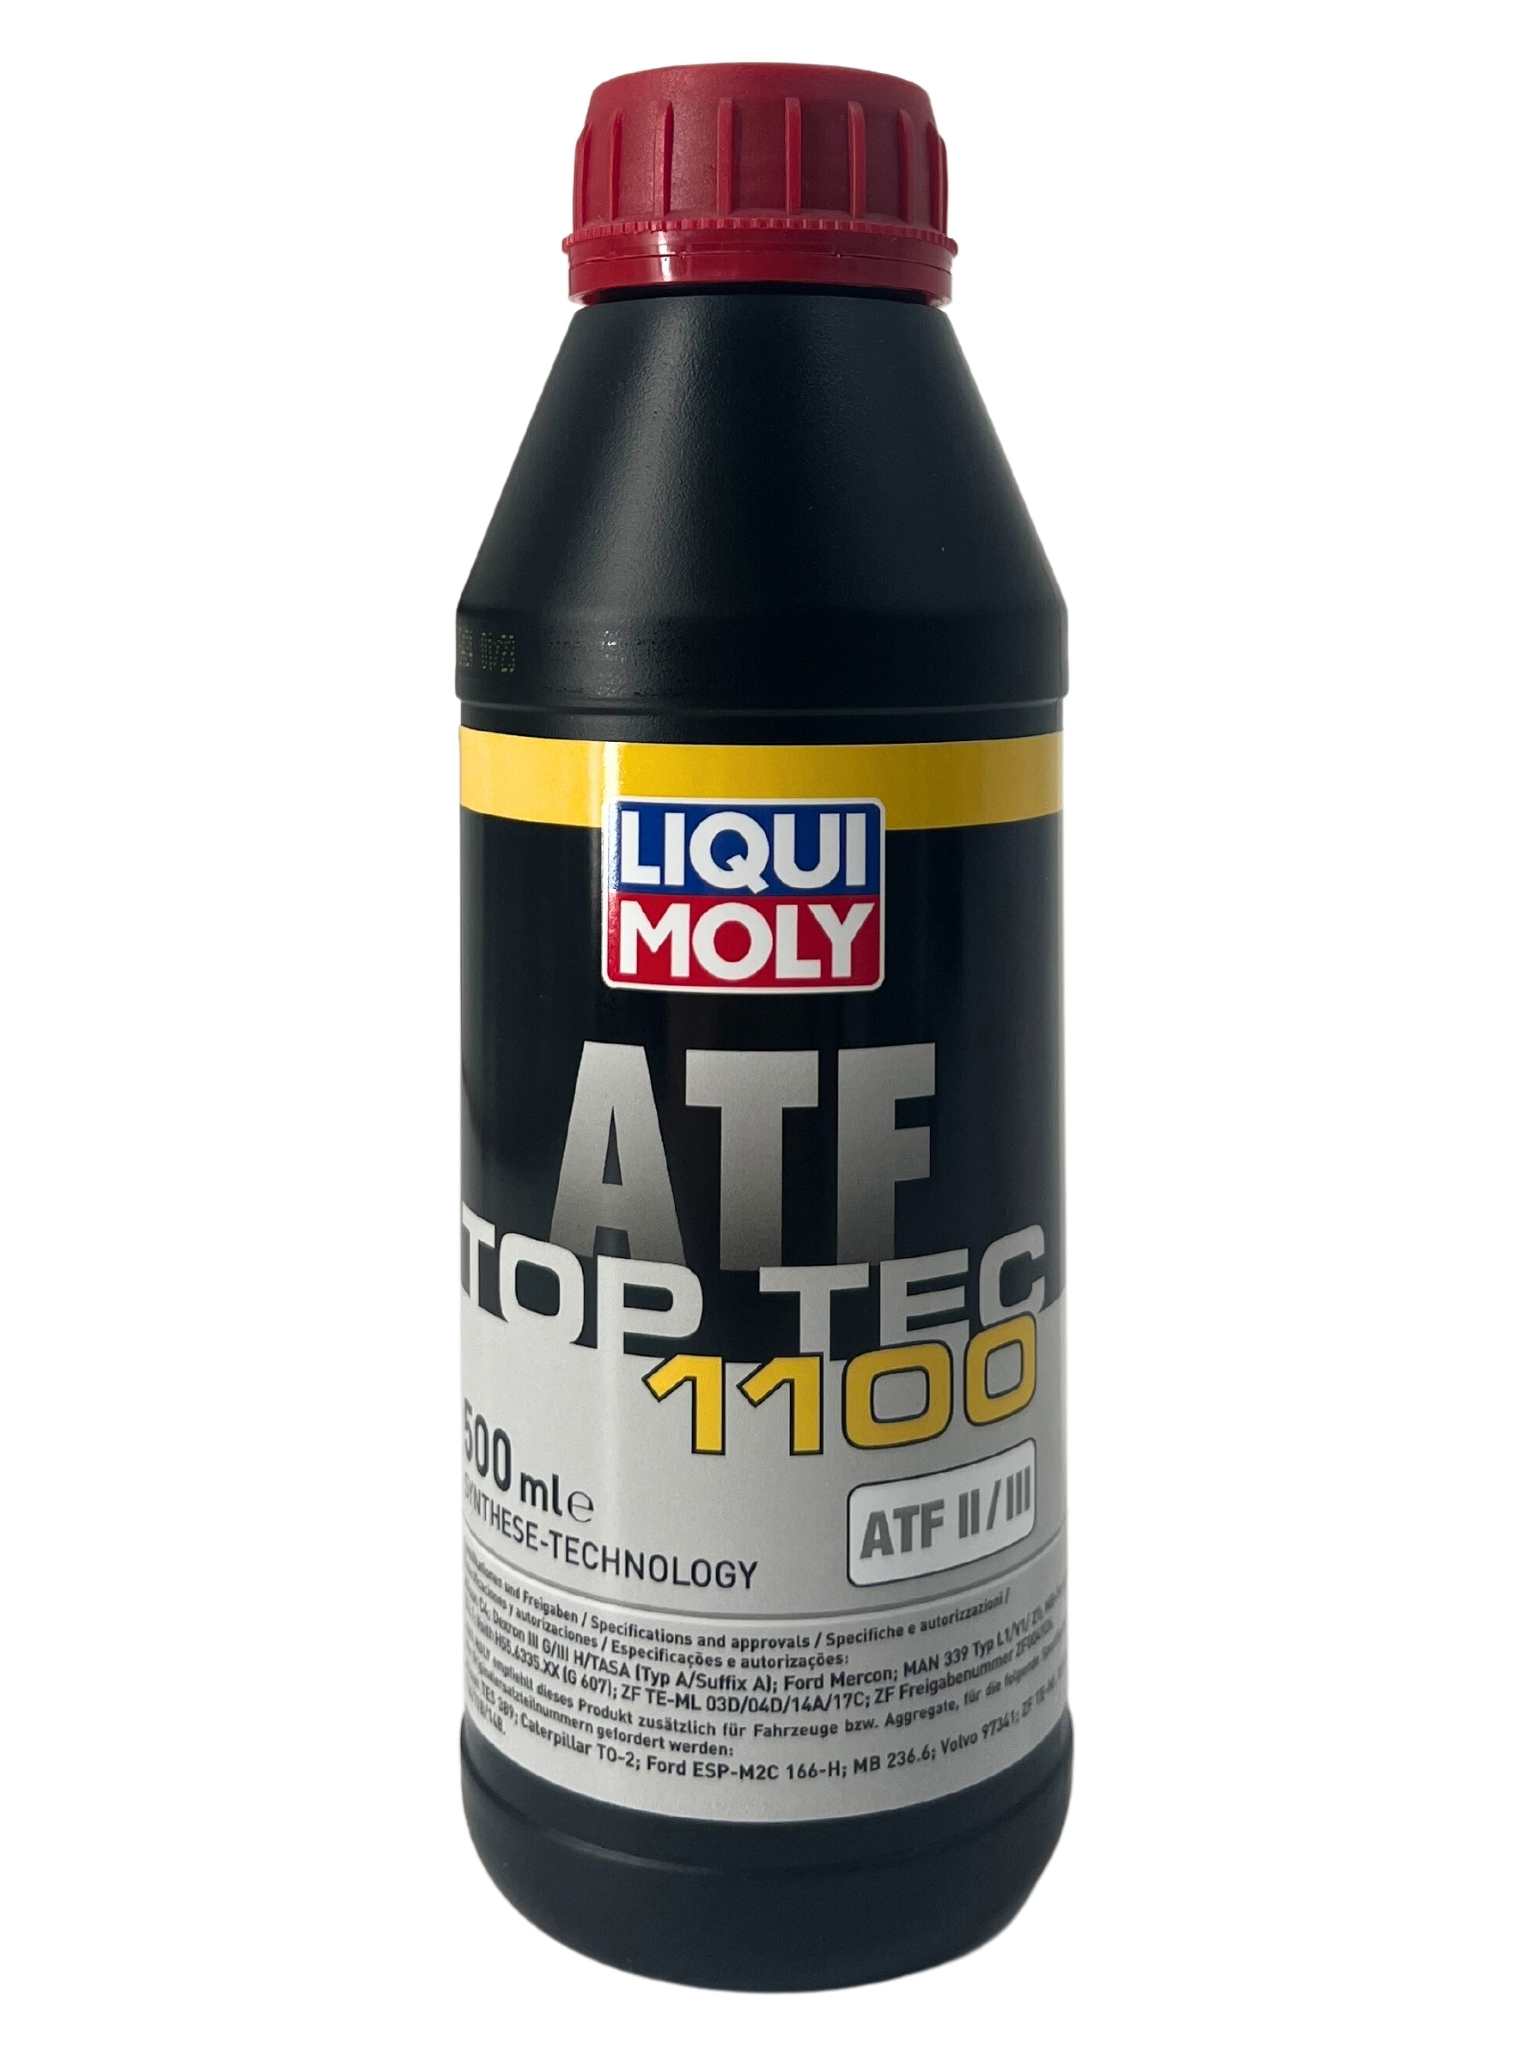 Liqui Moly Top Tec ATF 1100 500 ML